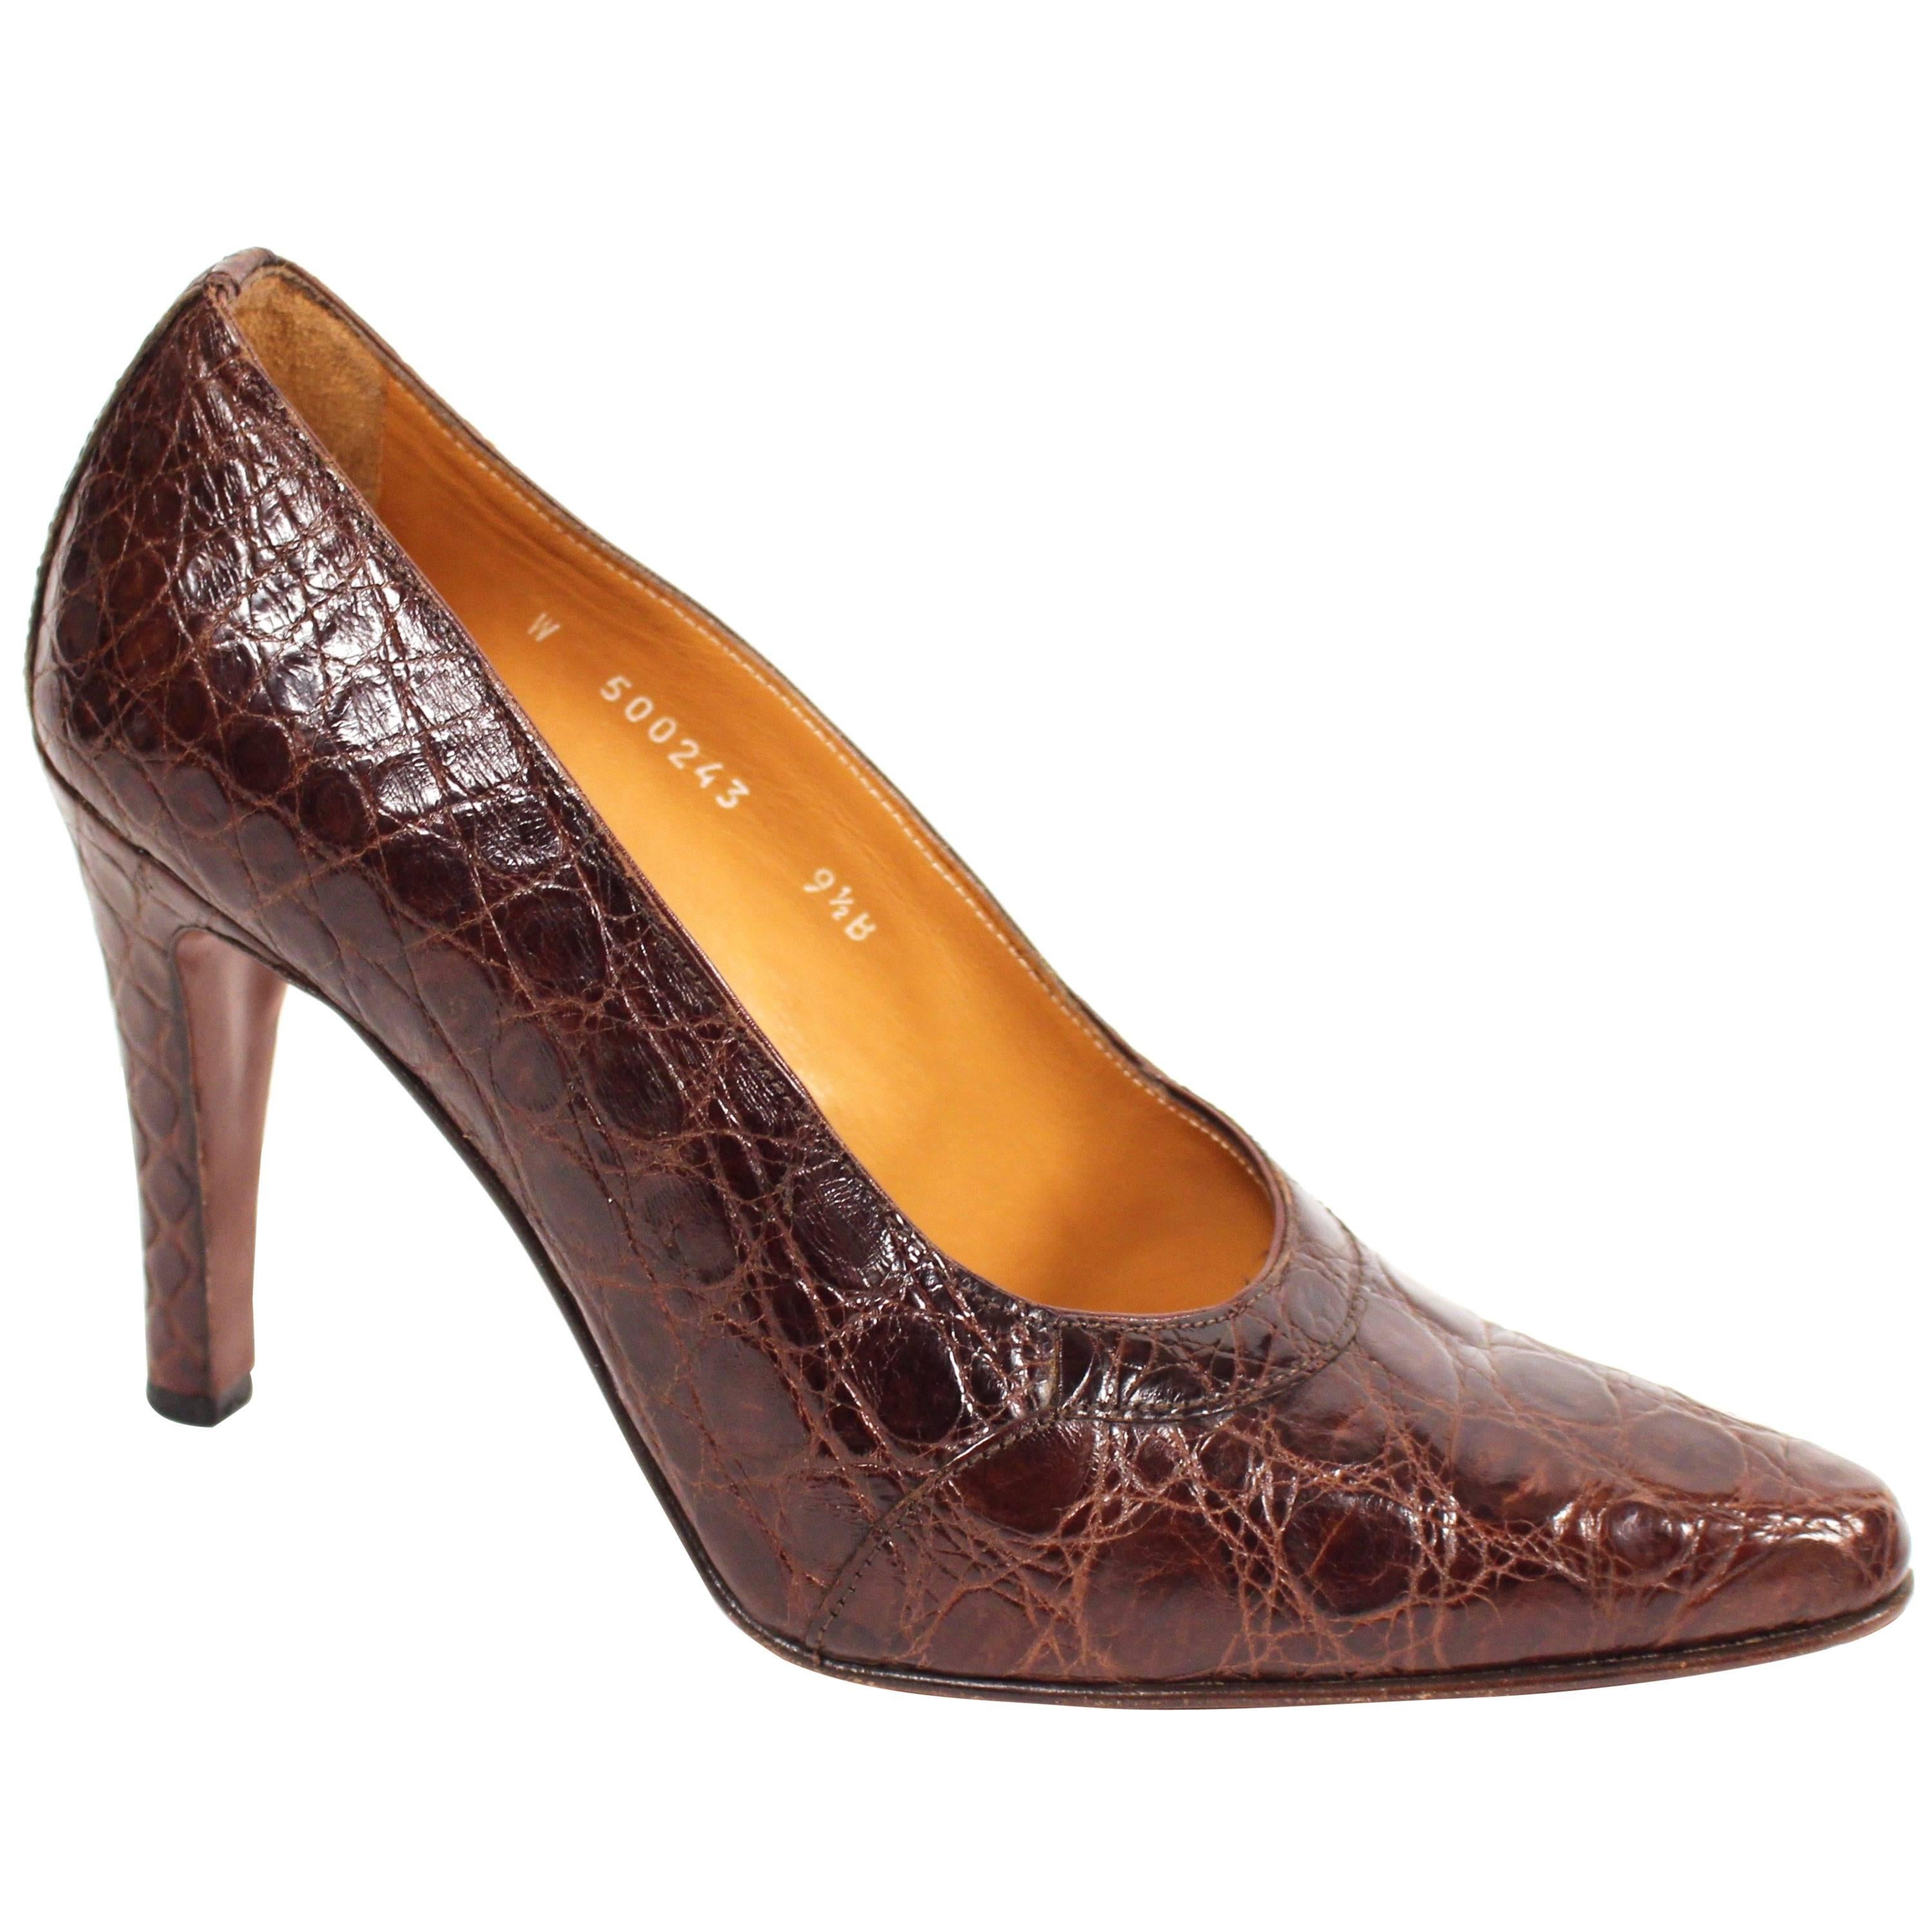 1980's RALPH LAUREN brown crocodile heels - 9.5